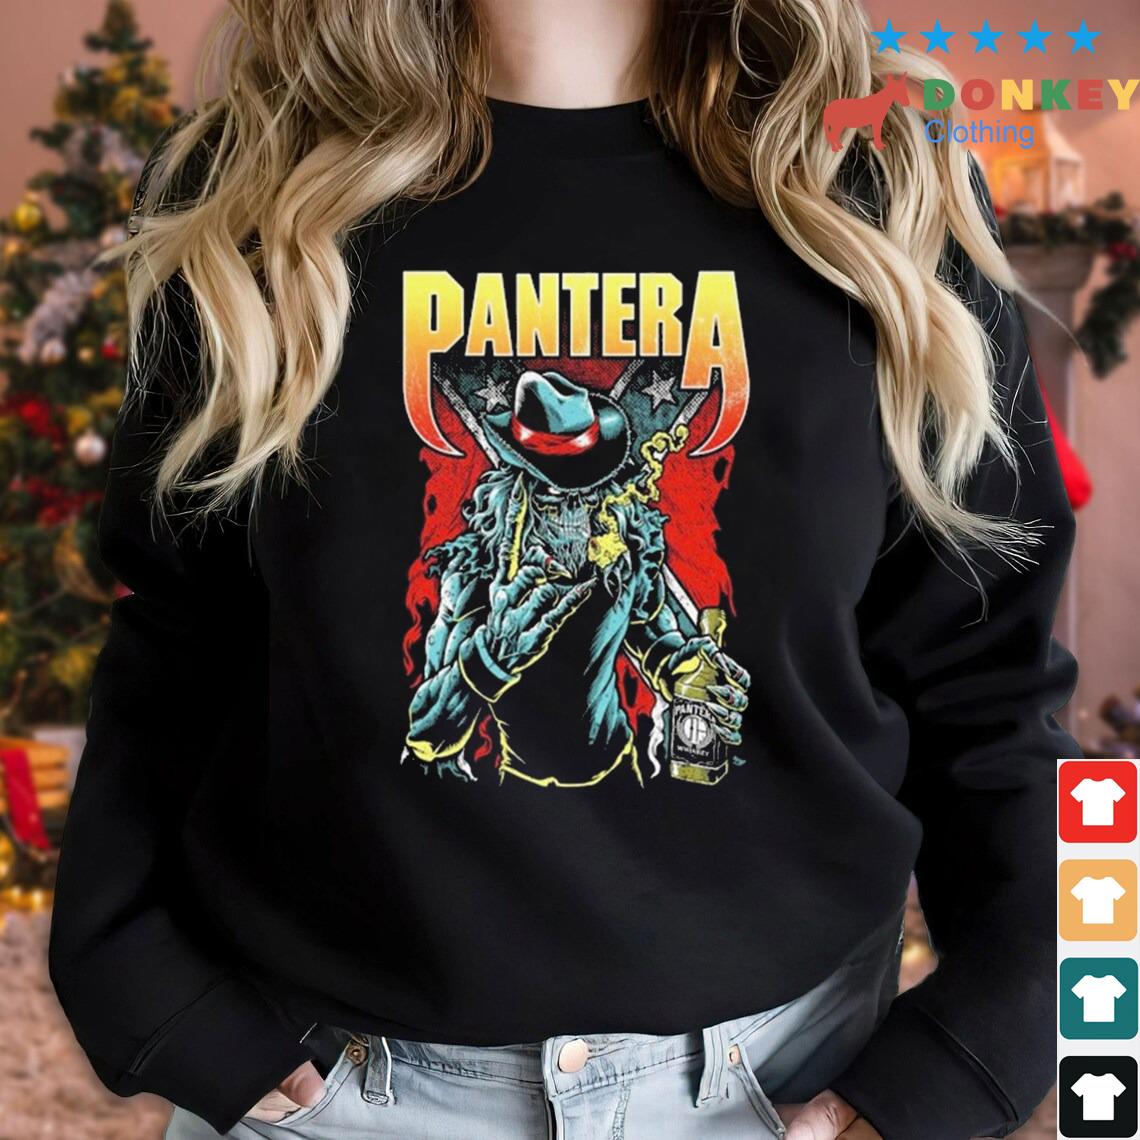 Pantera Vintage Hard Rock Shirt